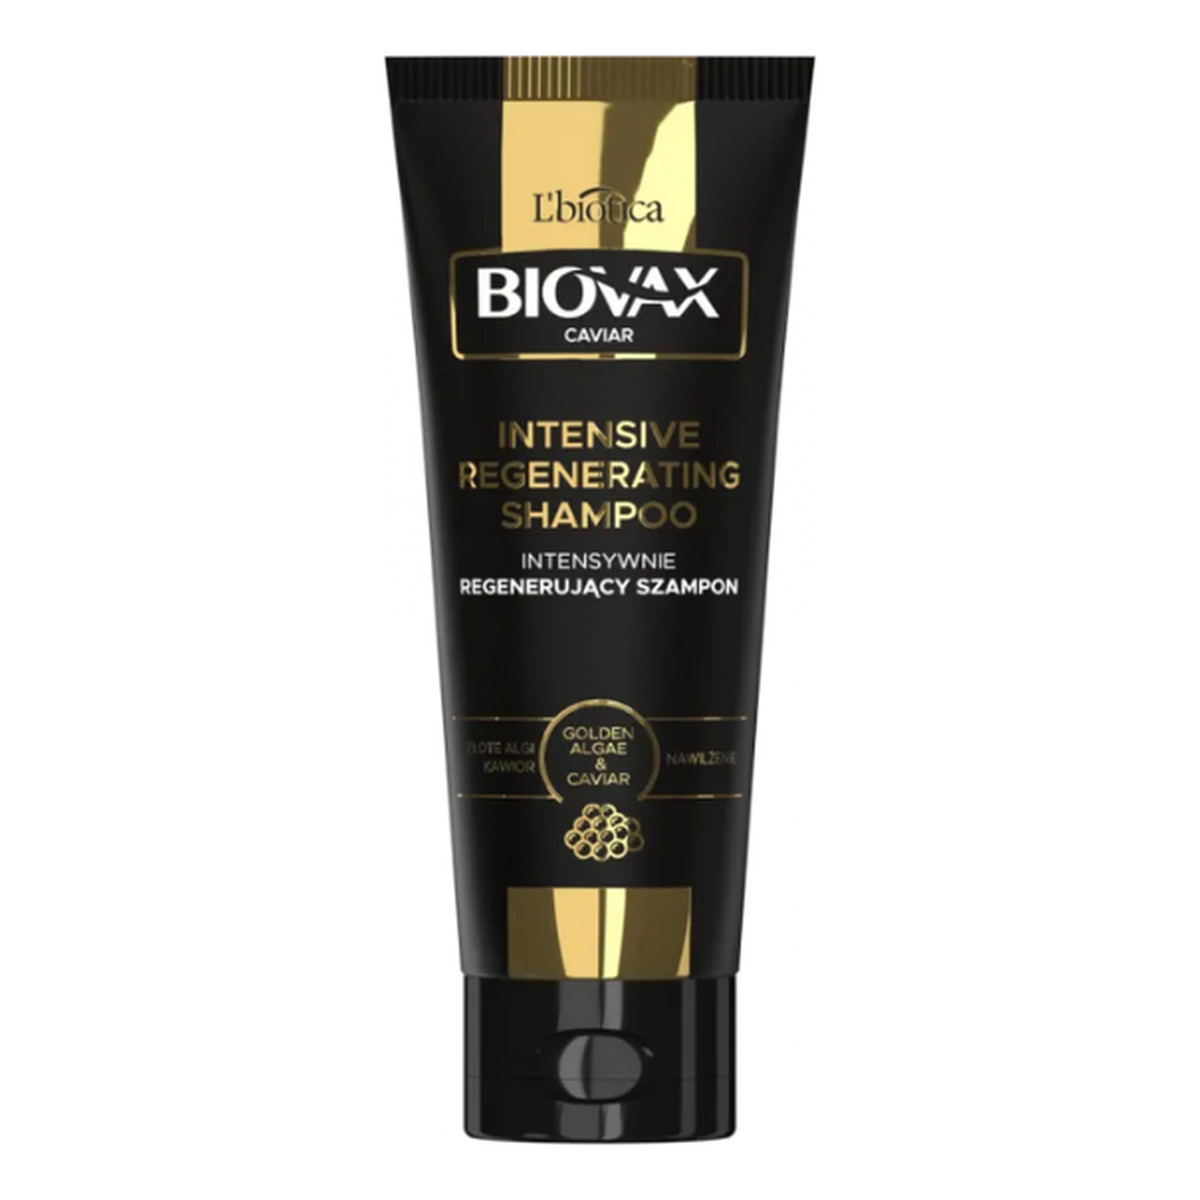 Biovax Glamour Caviar Szampon do włosów intensywnie regenerujący - Złote Algi & Kawior 200ml